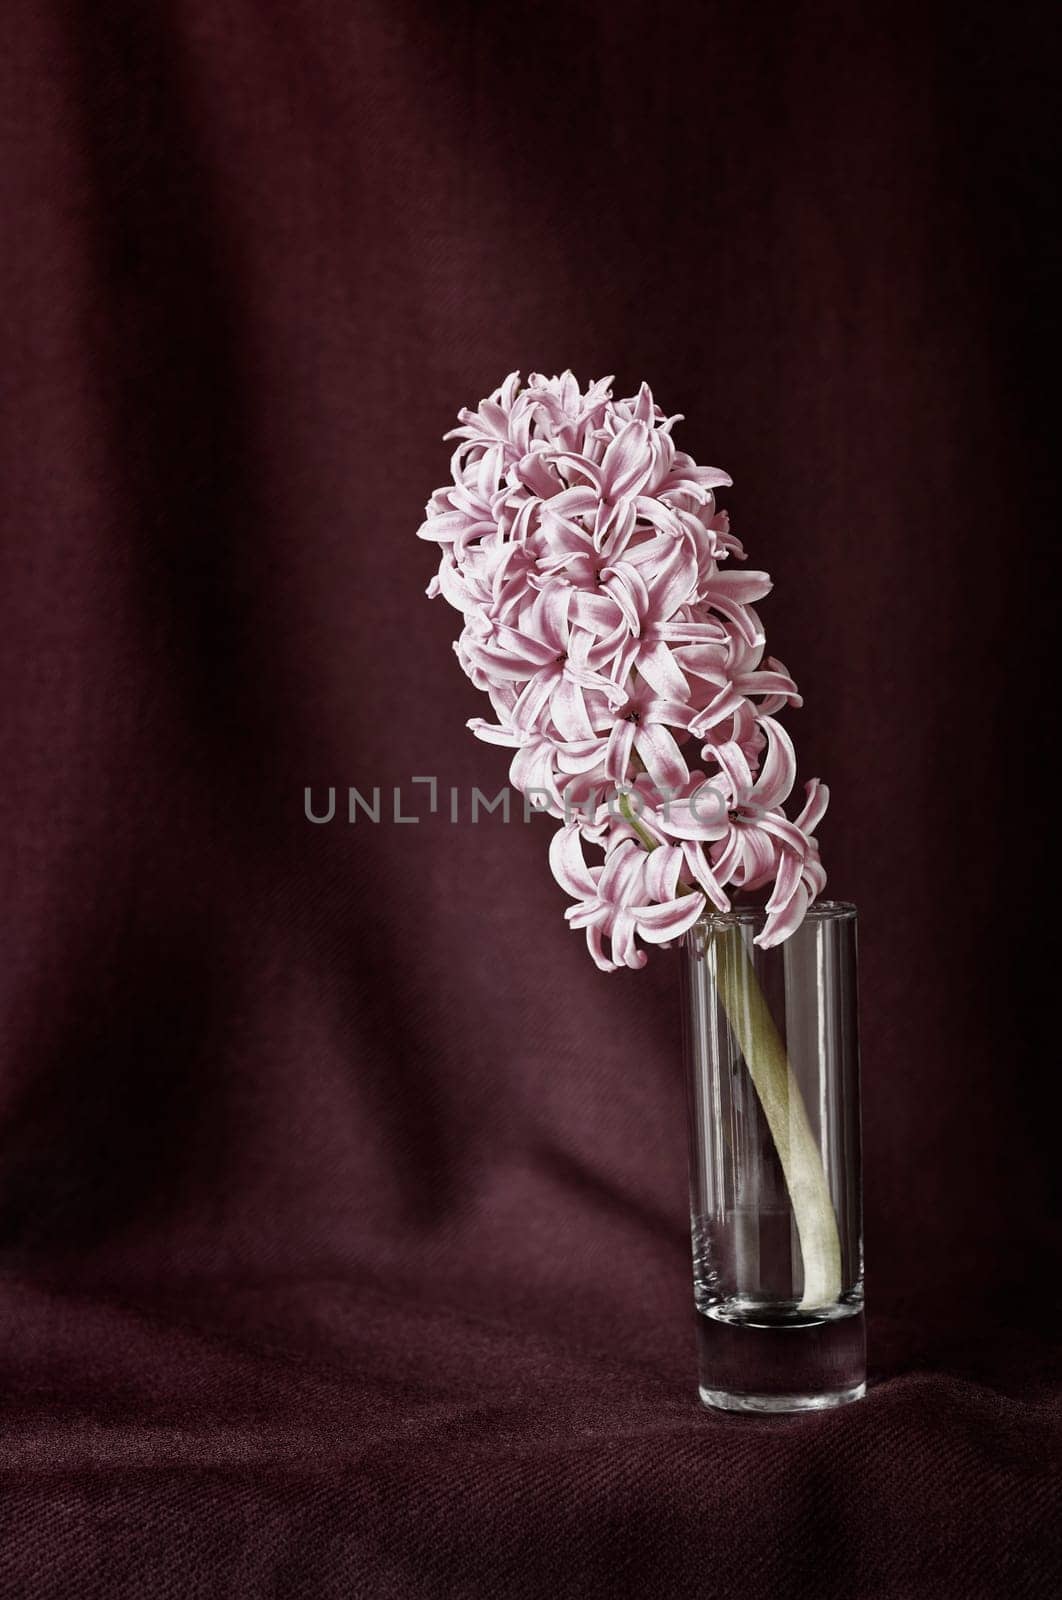 Pink flower of  hyacinth in vase by victimewalker